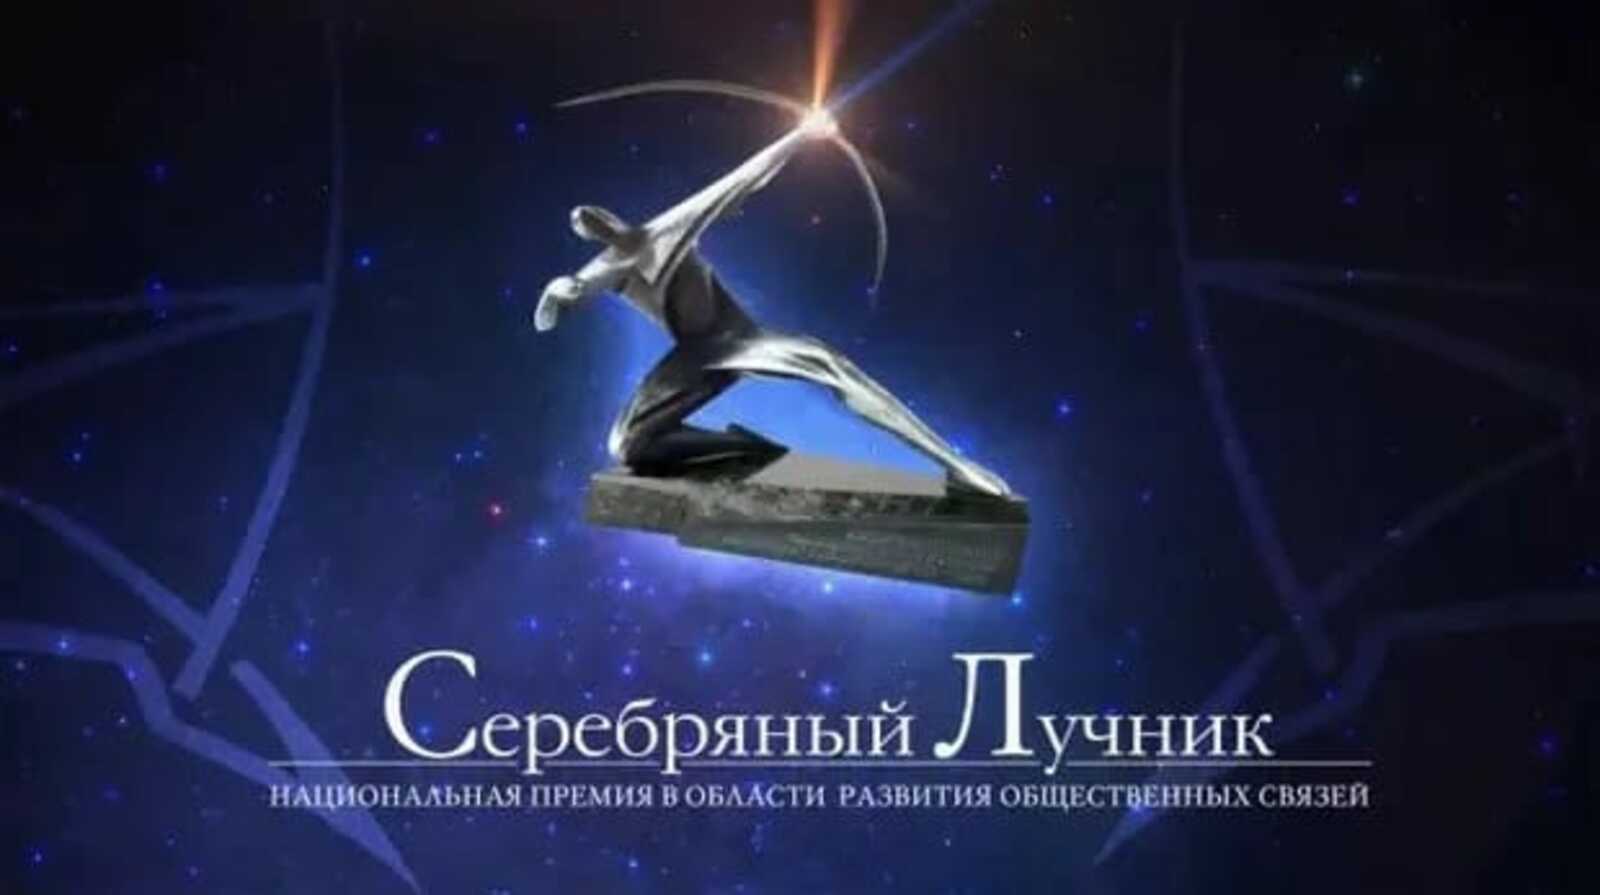 Проект Башкортостана - лучший в области развития общественных связей в России